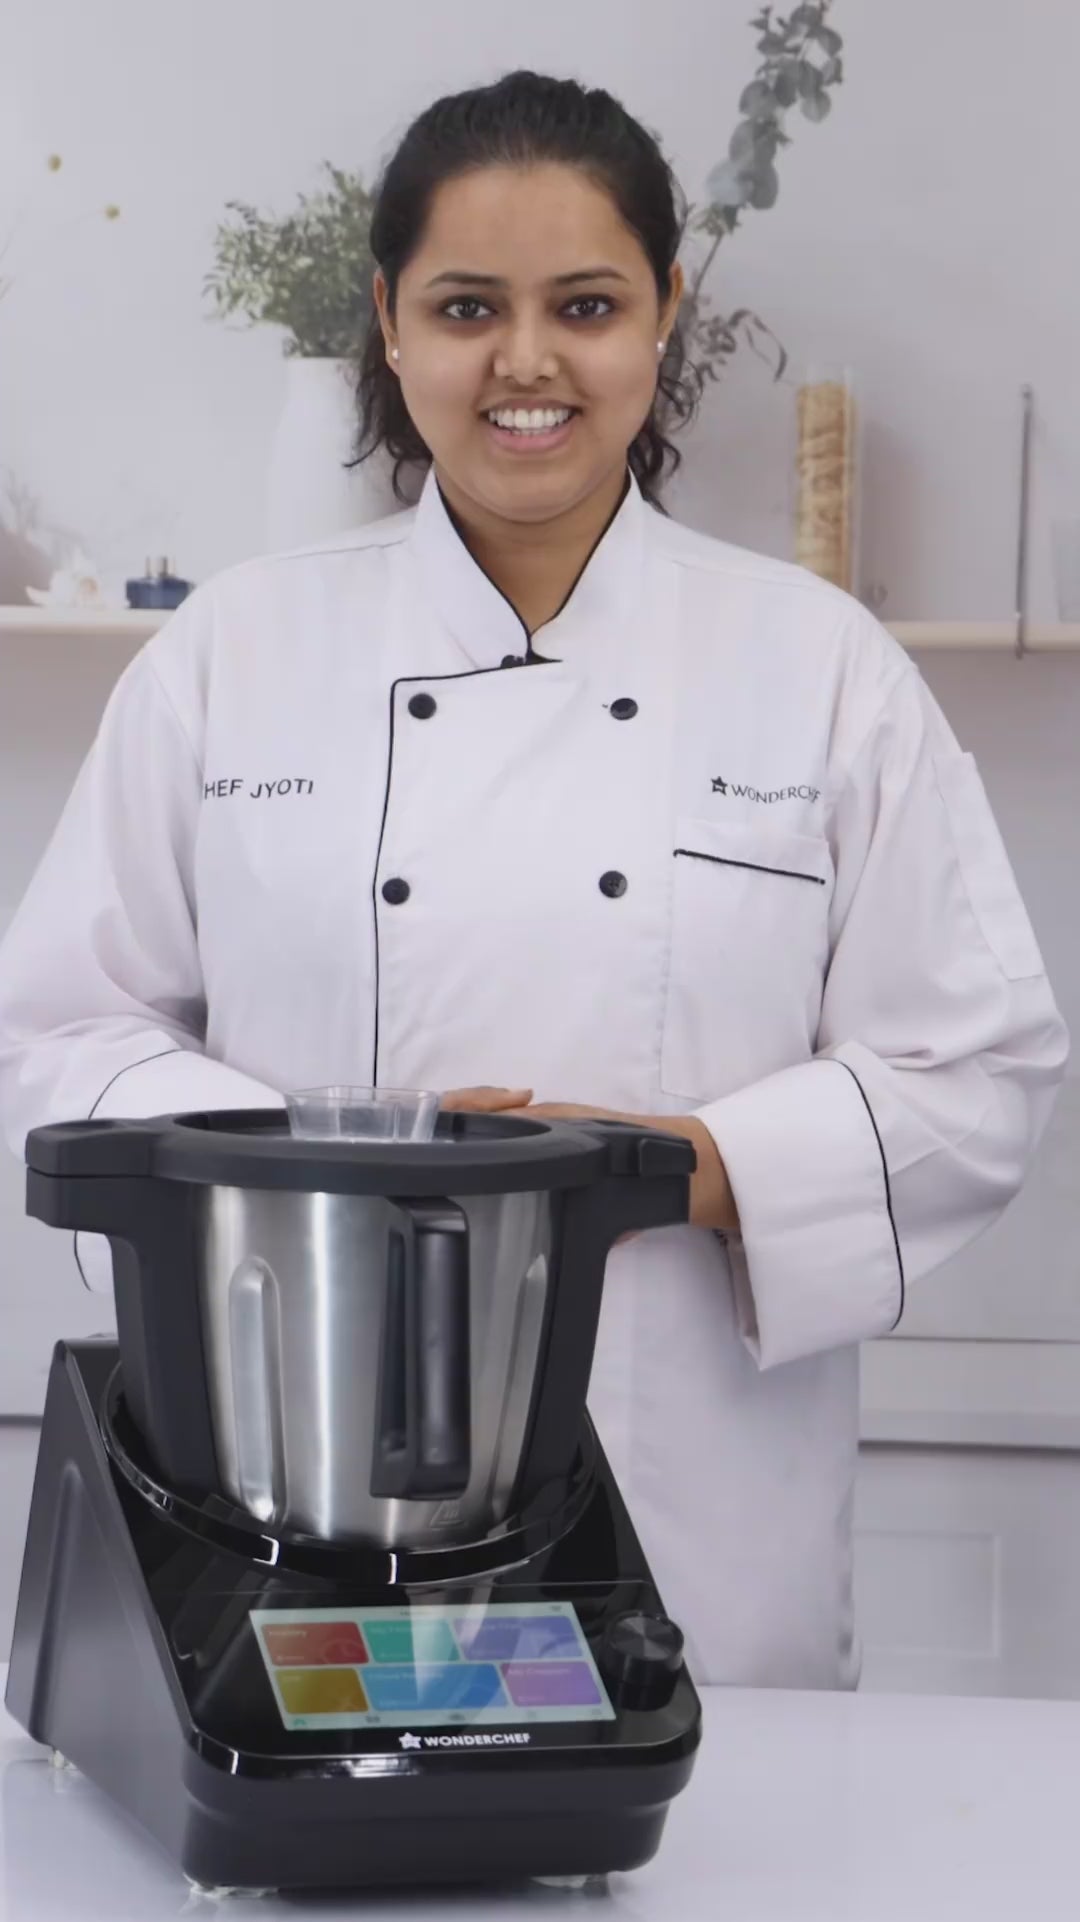 WonderChef ChefMagic - All in one Kitchen Robot K7